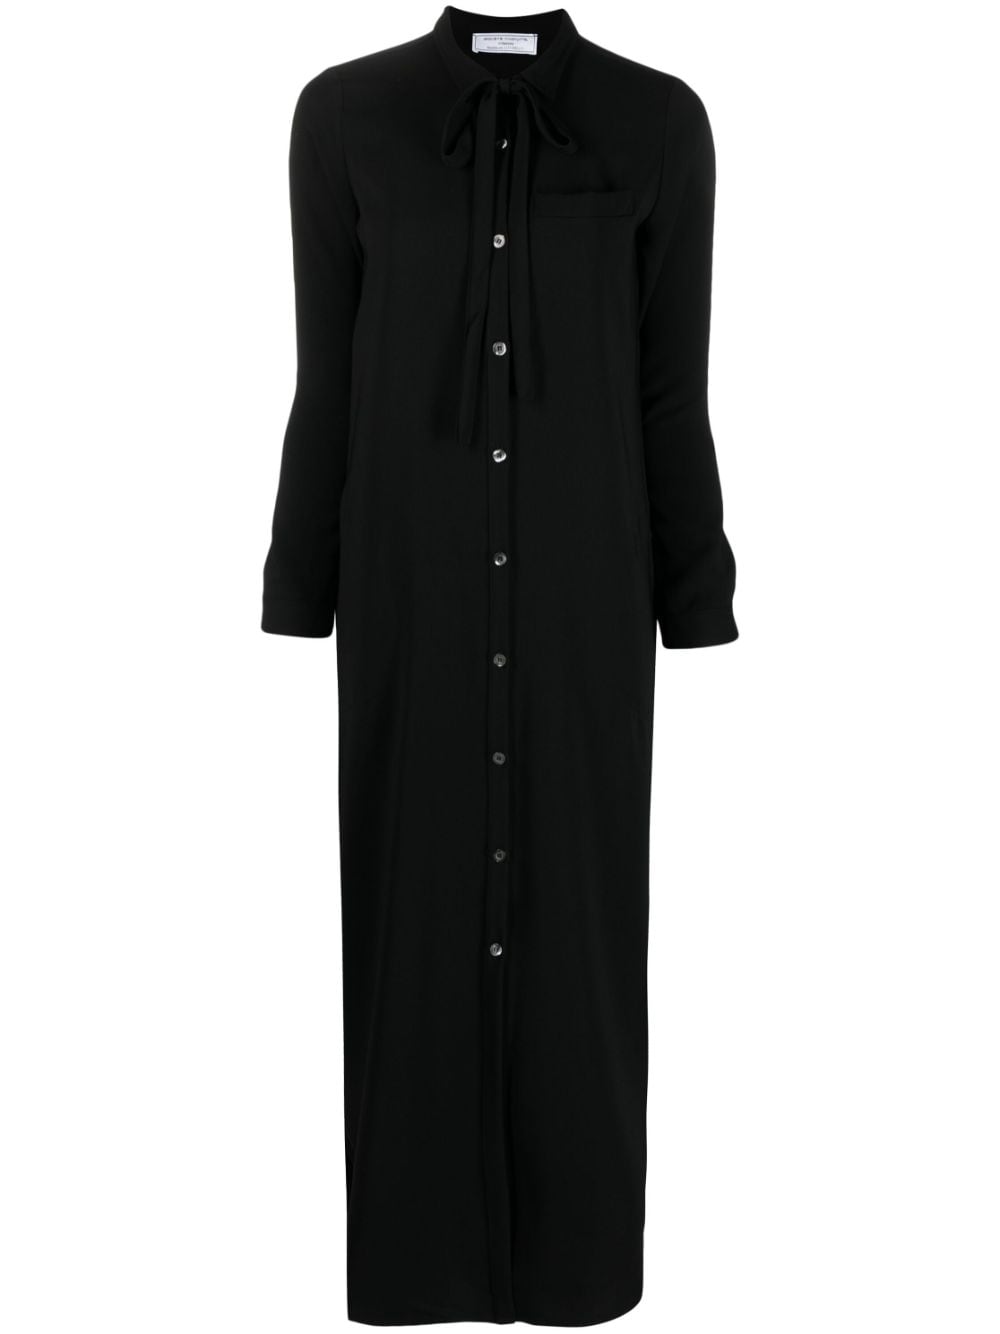 Société Anonyme bow-detail buttoned shirt dress - Black